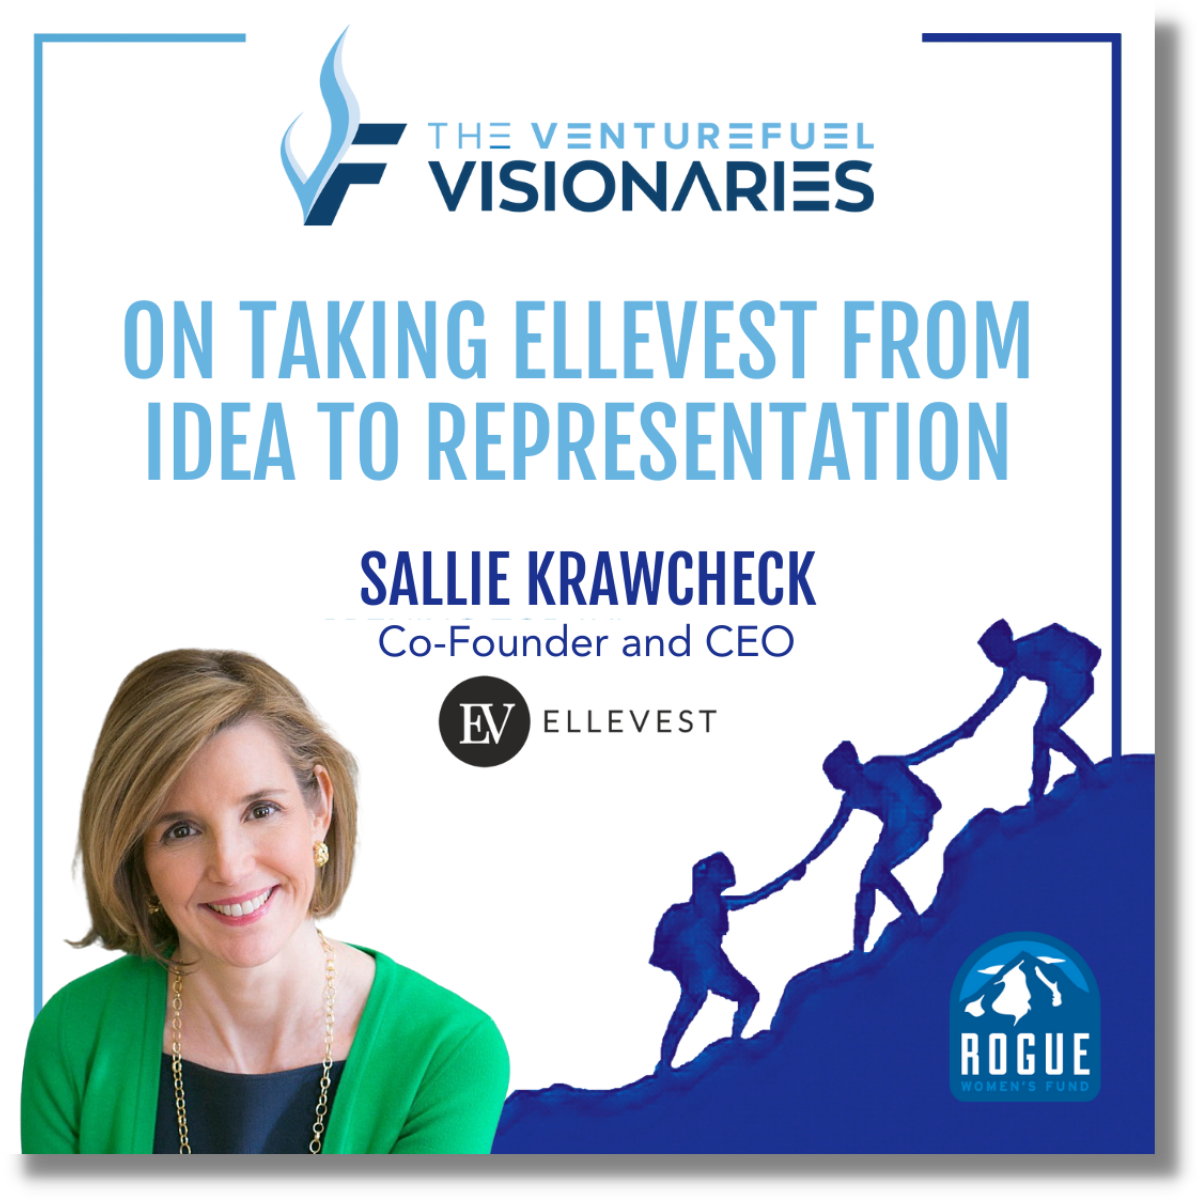 VentureFuel Visionary Sallie Krawcheck